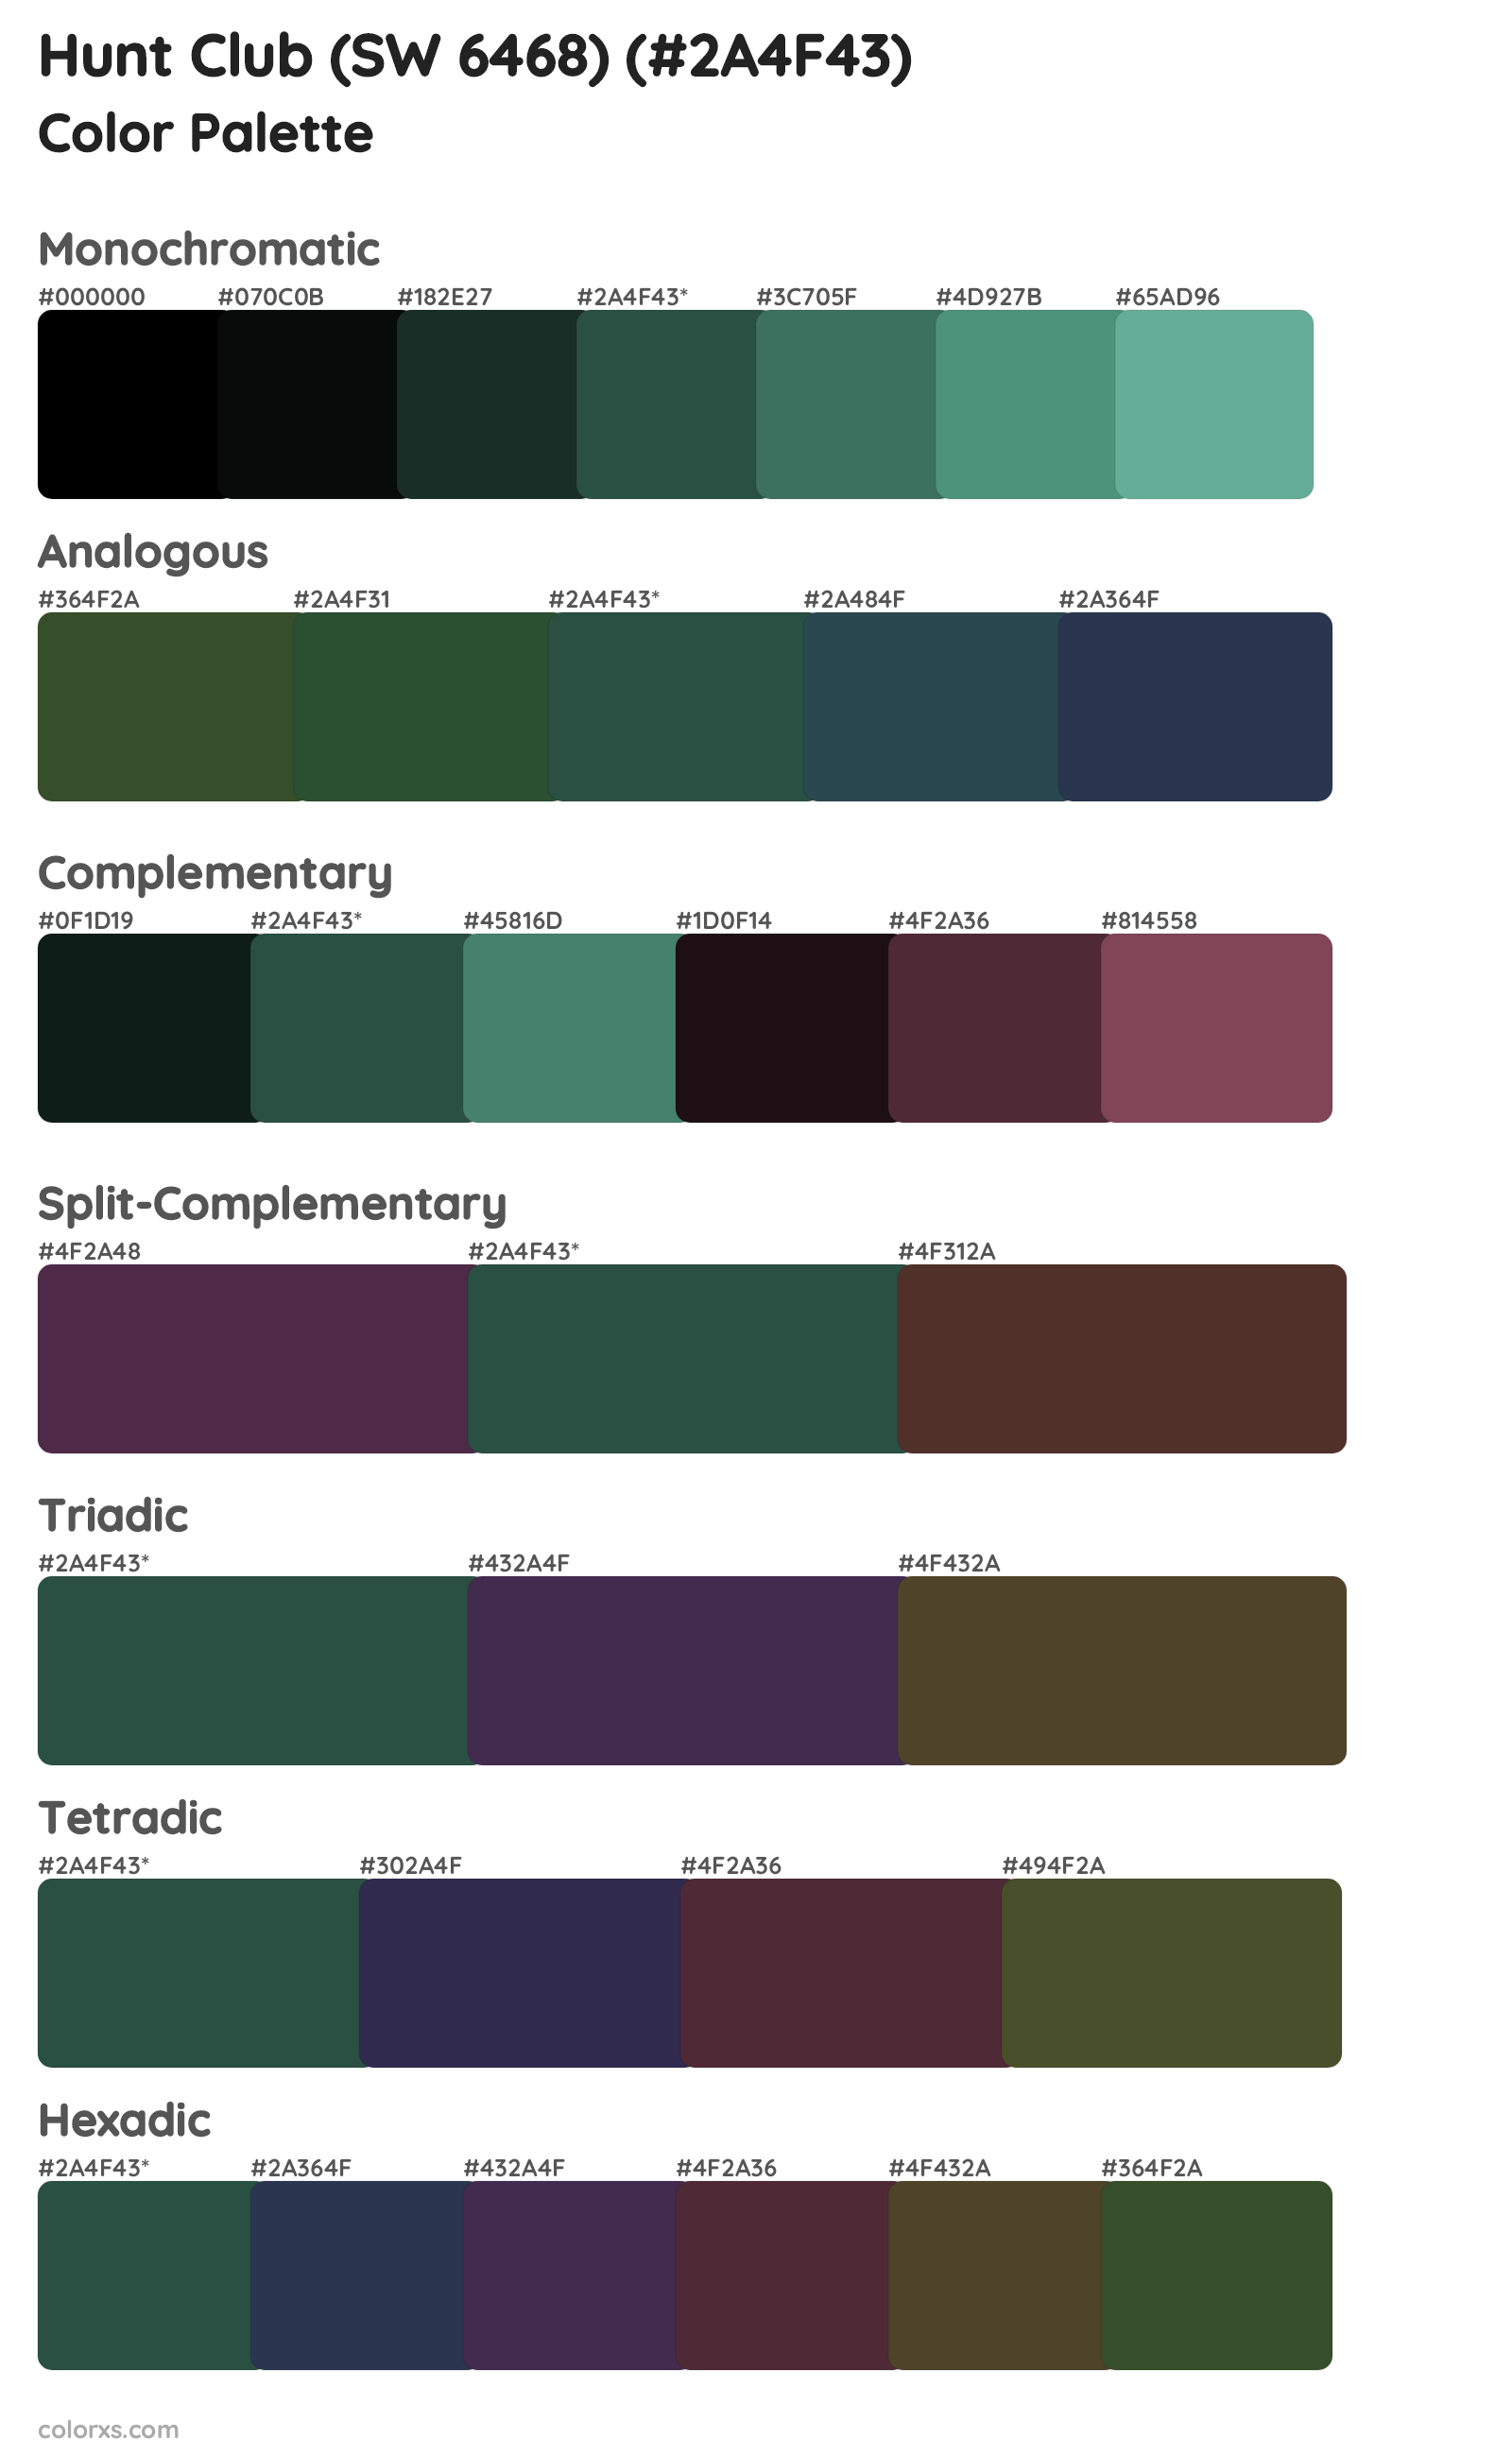 Hunt Club (SW 6468) Color Scheme Palettes